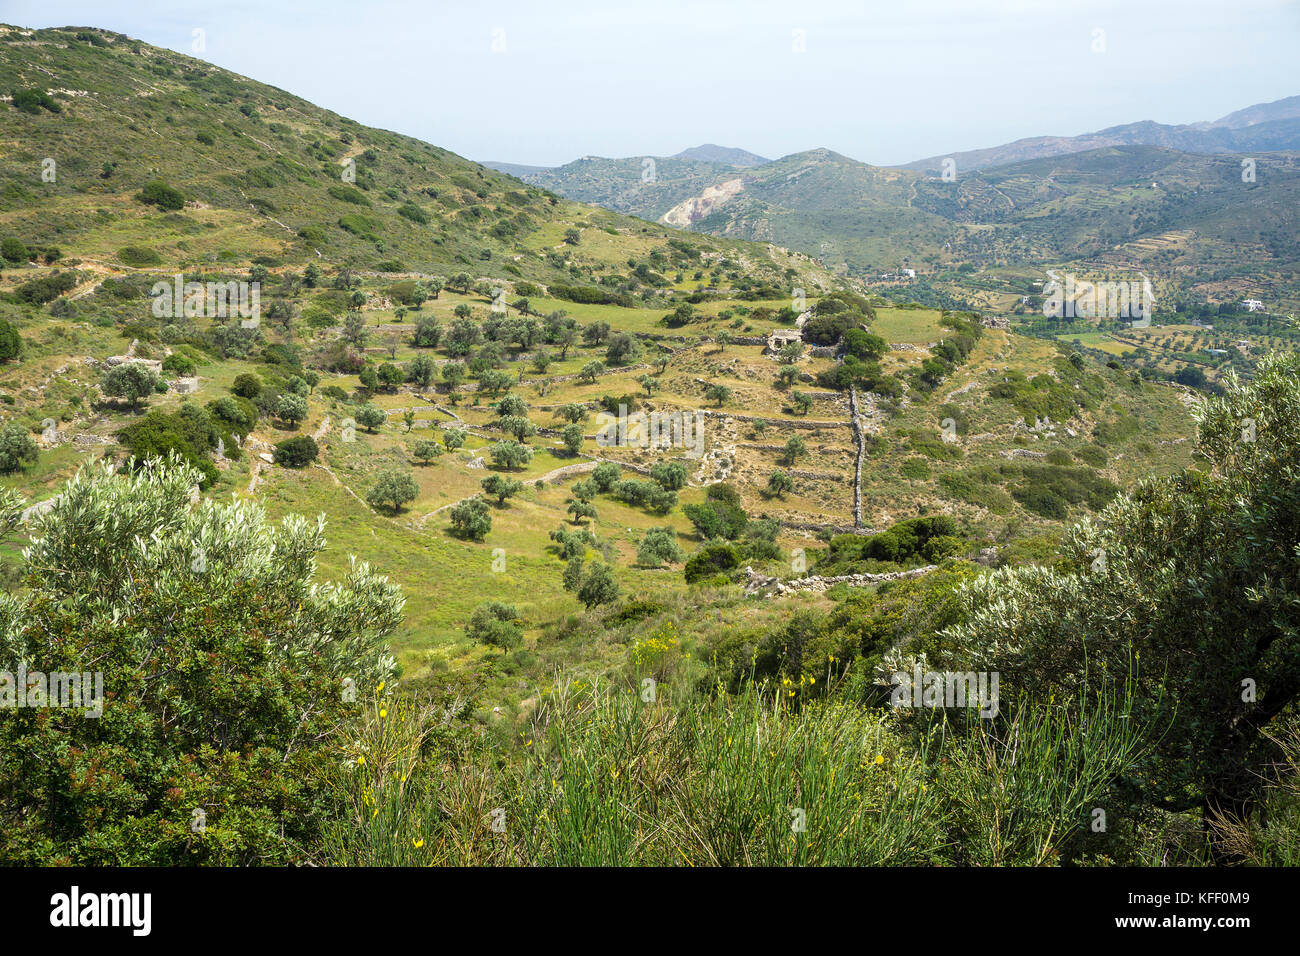 Paysage verdoyant au milieu de l'île de Naxos, Cyclades, Mer Égée, Grèce Banque D'Images